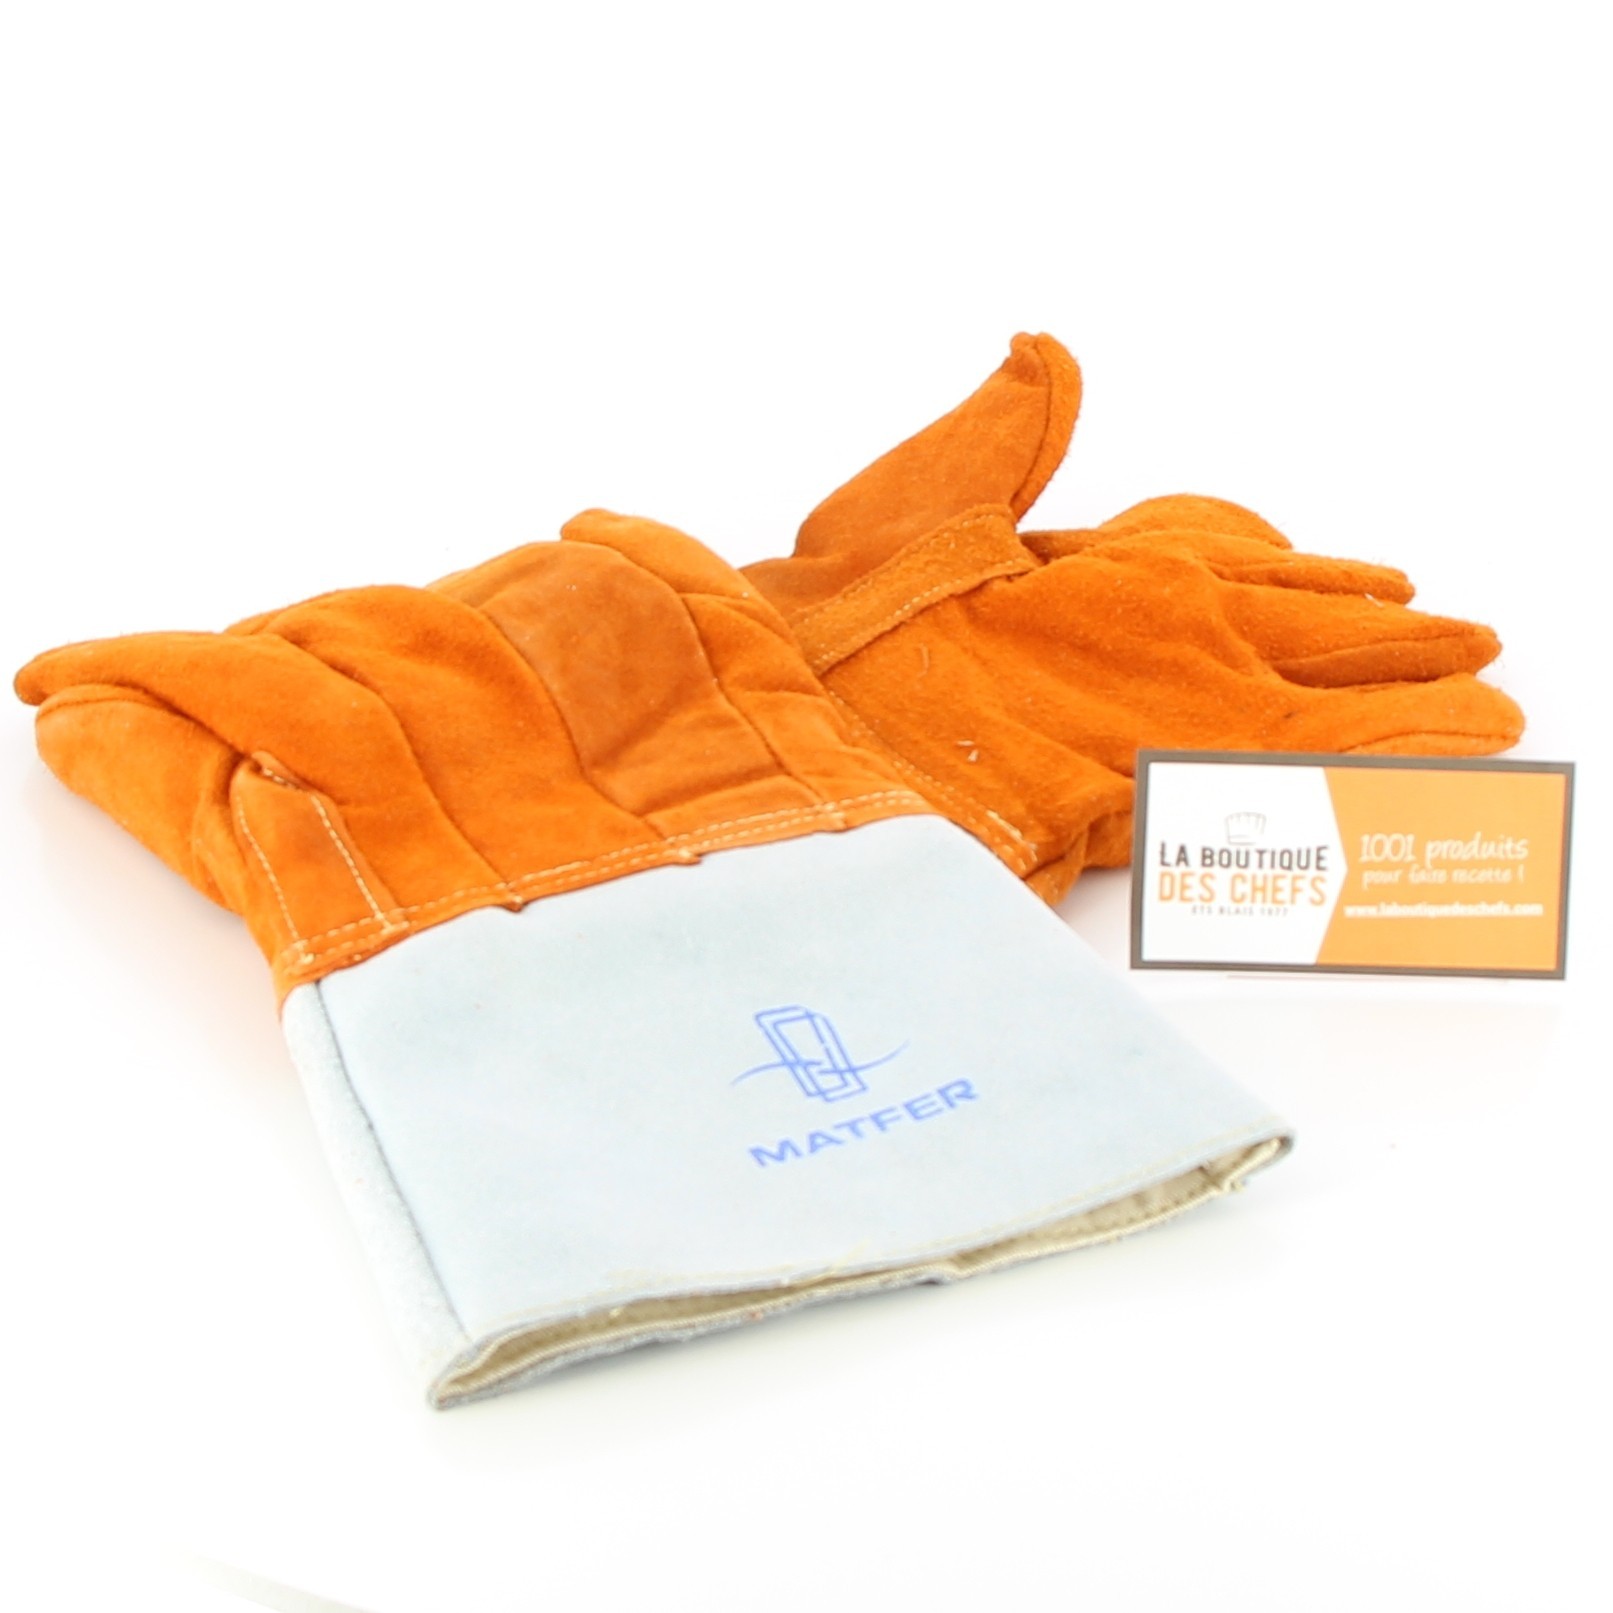 Gants de protection thermique (Crispin 10 cm)